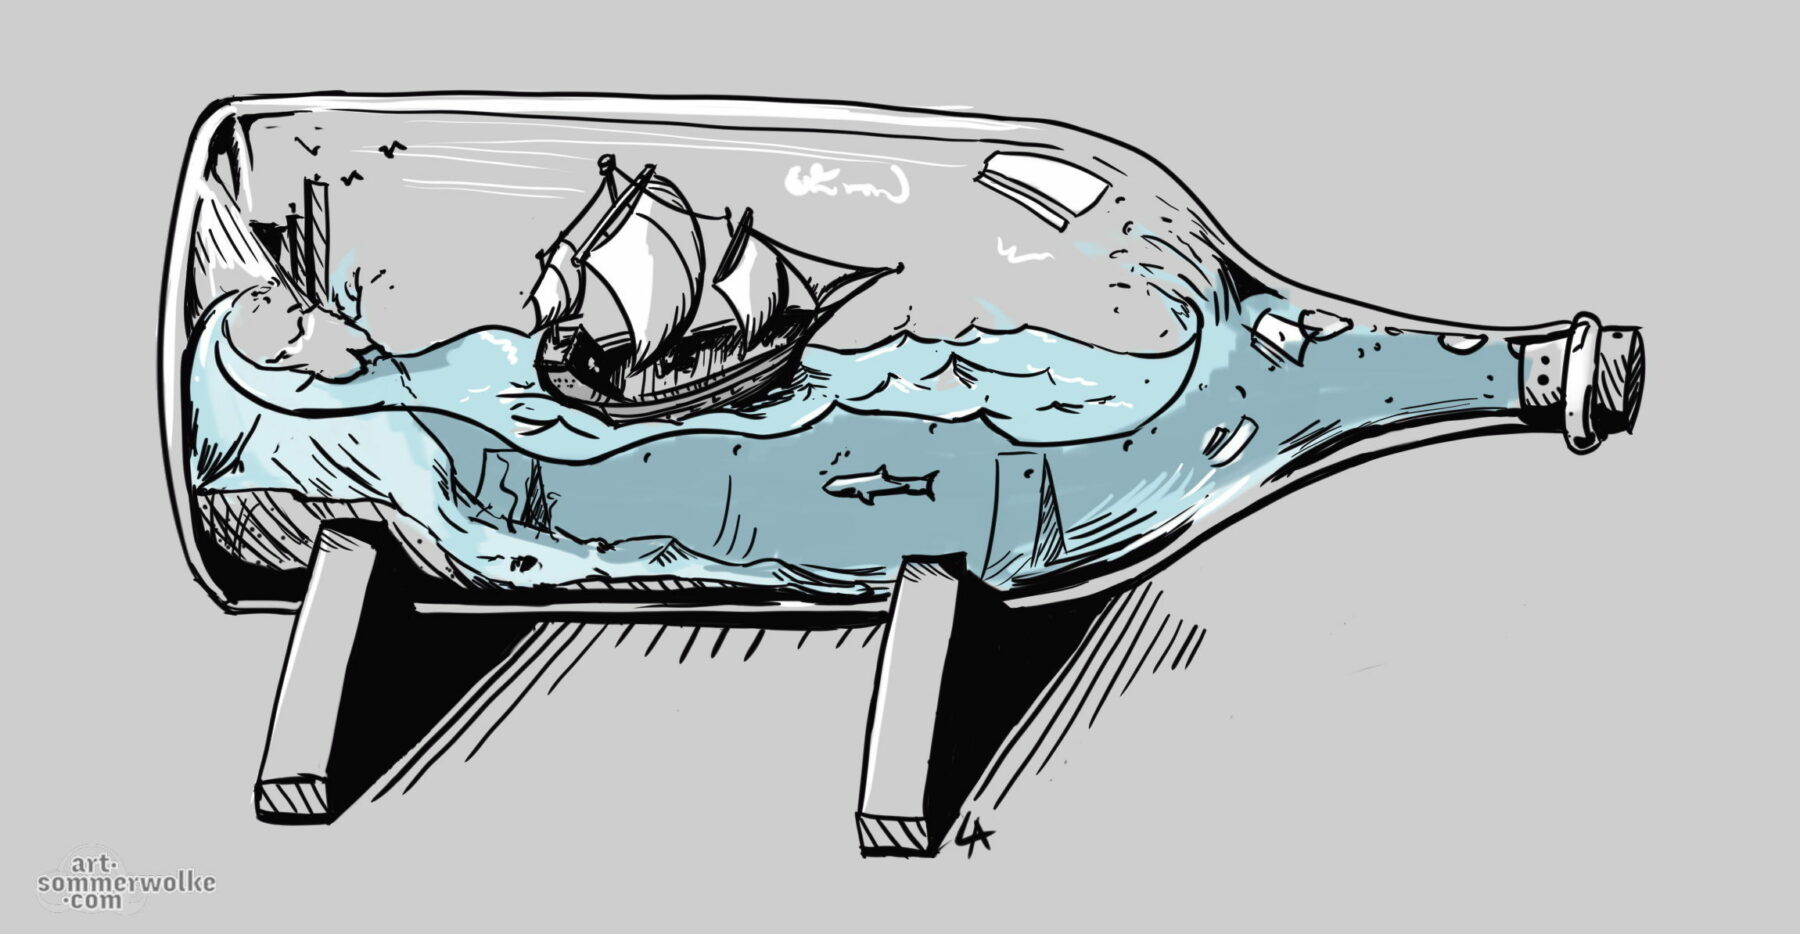 Digitale Illustration eines Flasche mit einem kleinen schwimmenden Schiff darin. Digital illustration of a bottle with a small floating ship inside.